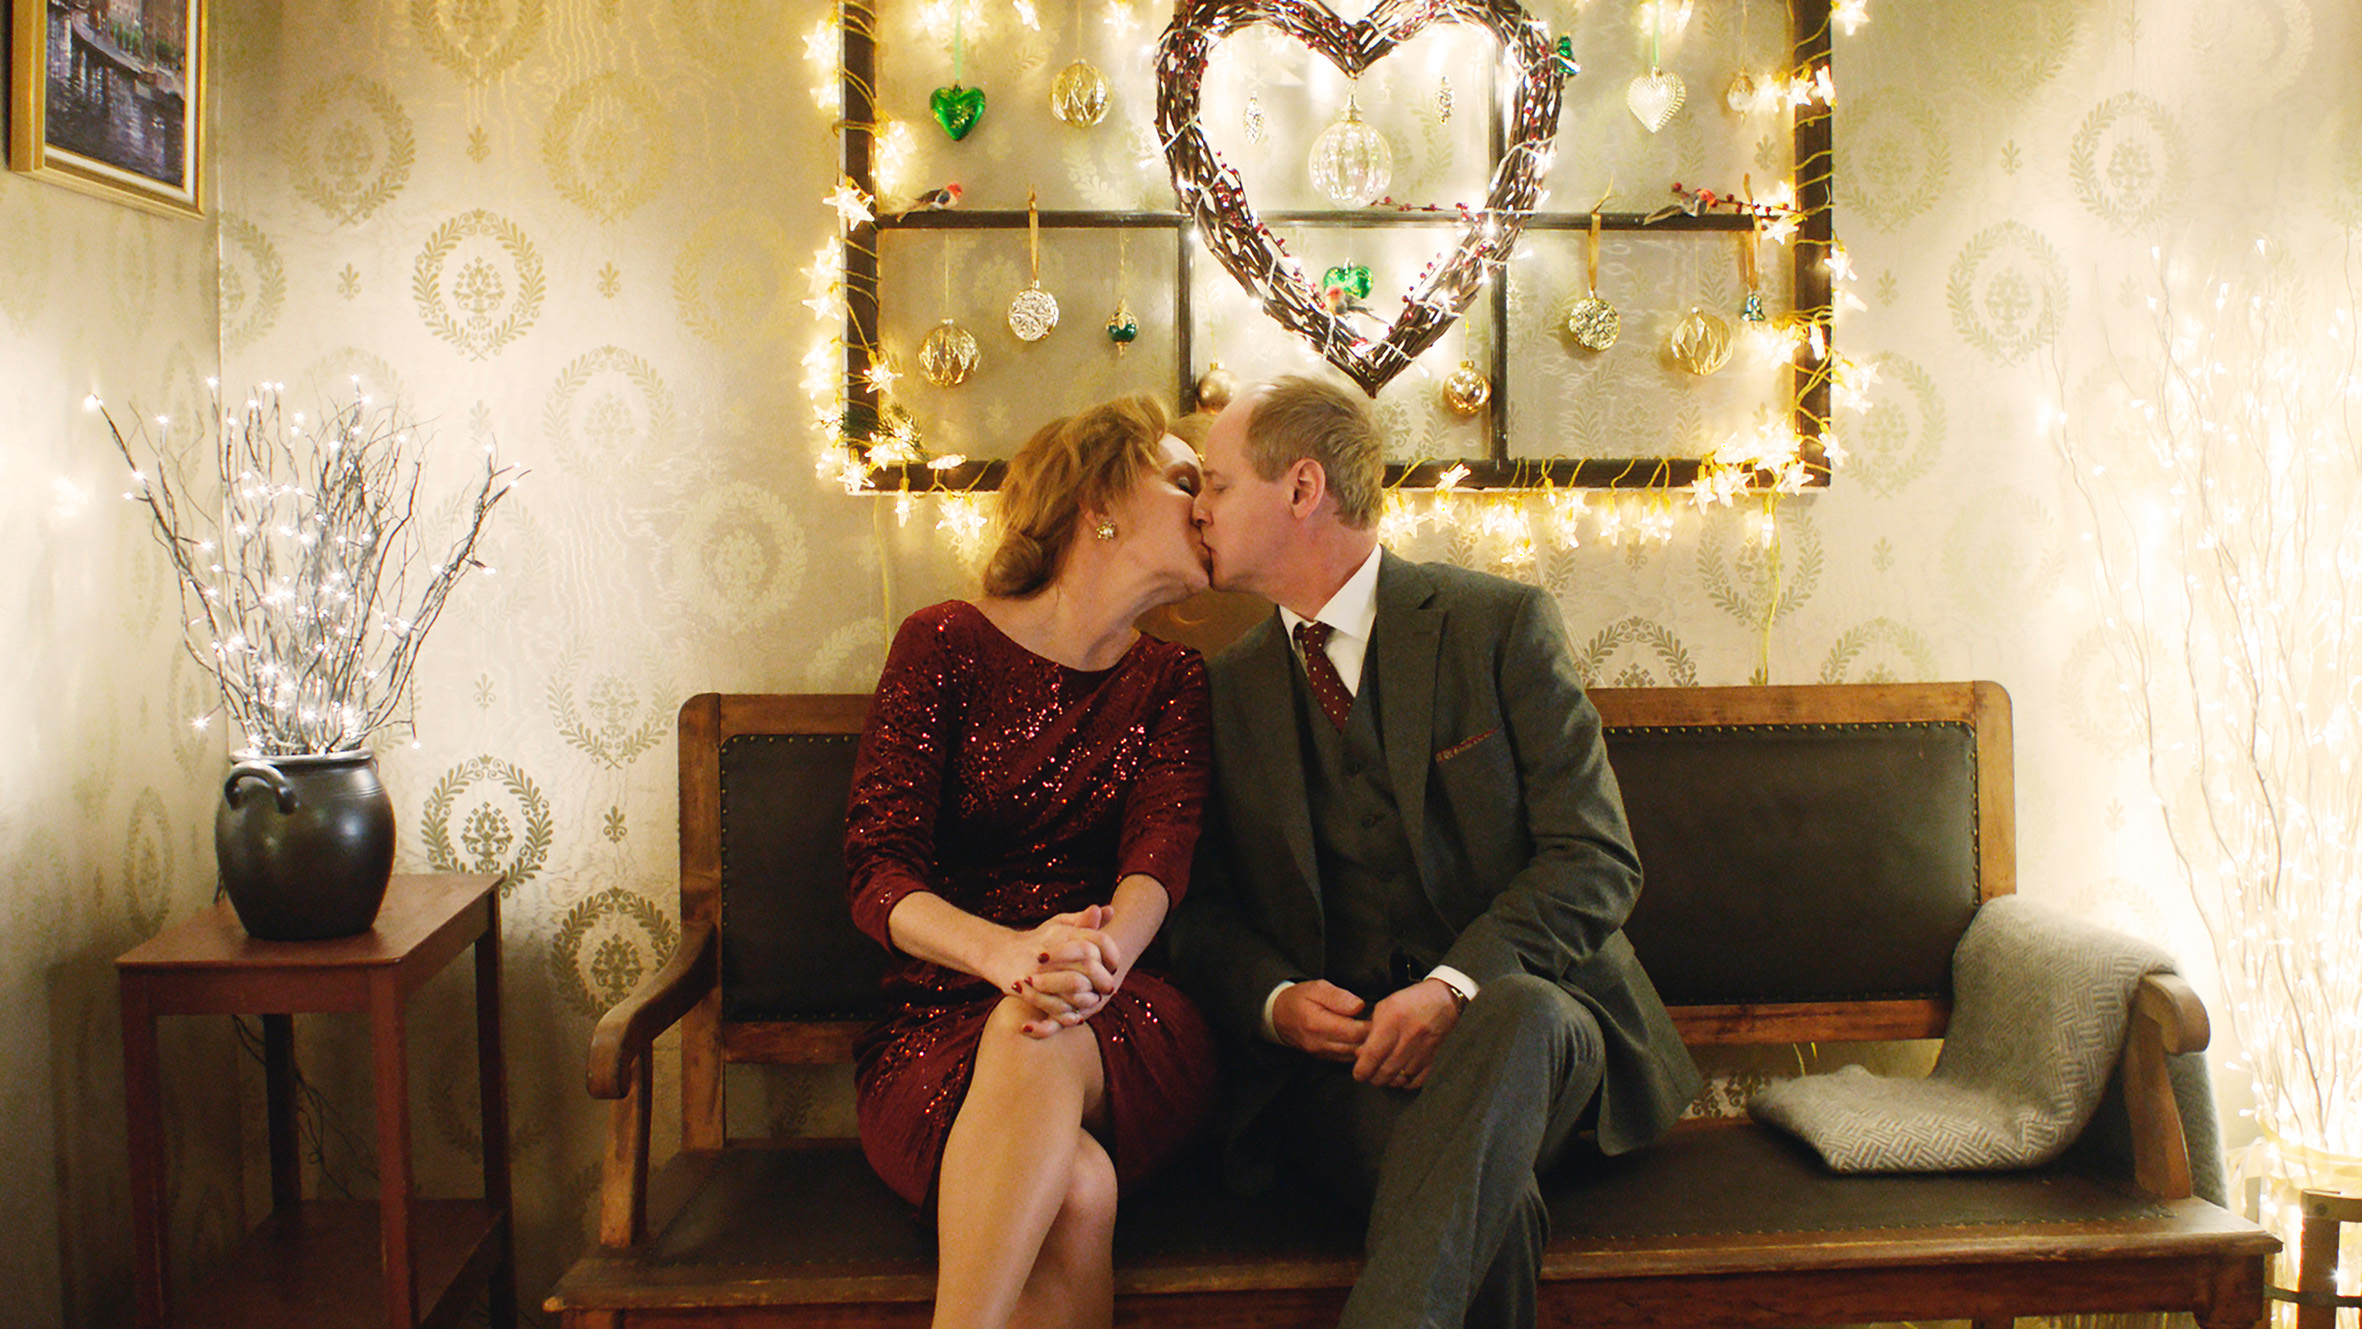 Filmstill aus "Eine schöne Bescherung": Ein sich küssendes Paar um die 60 sitzt auf einer lederbezogenen Holzbank unter einem weihnachtlich dekorierten Herz.